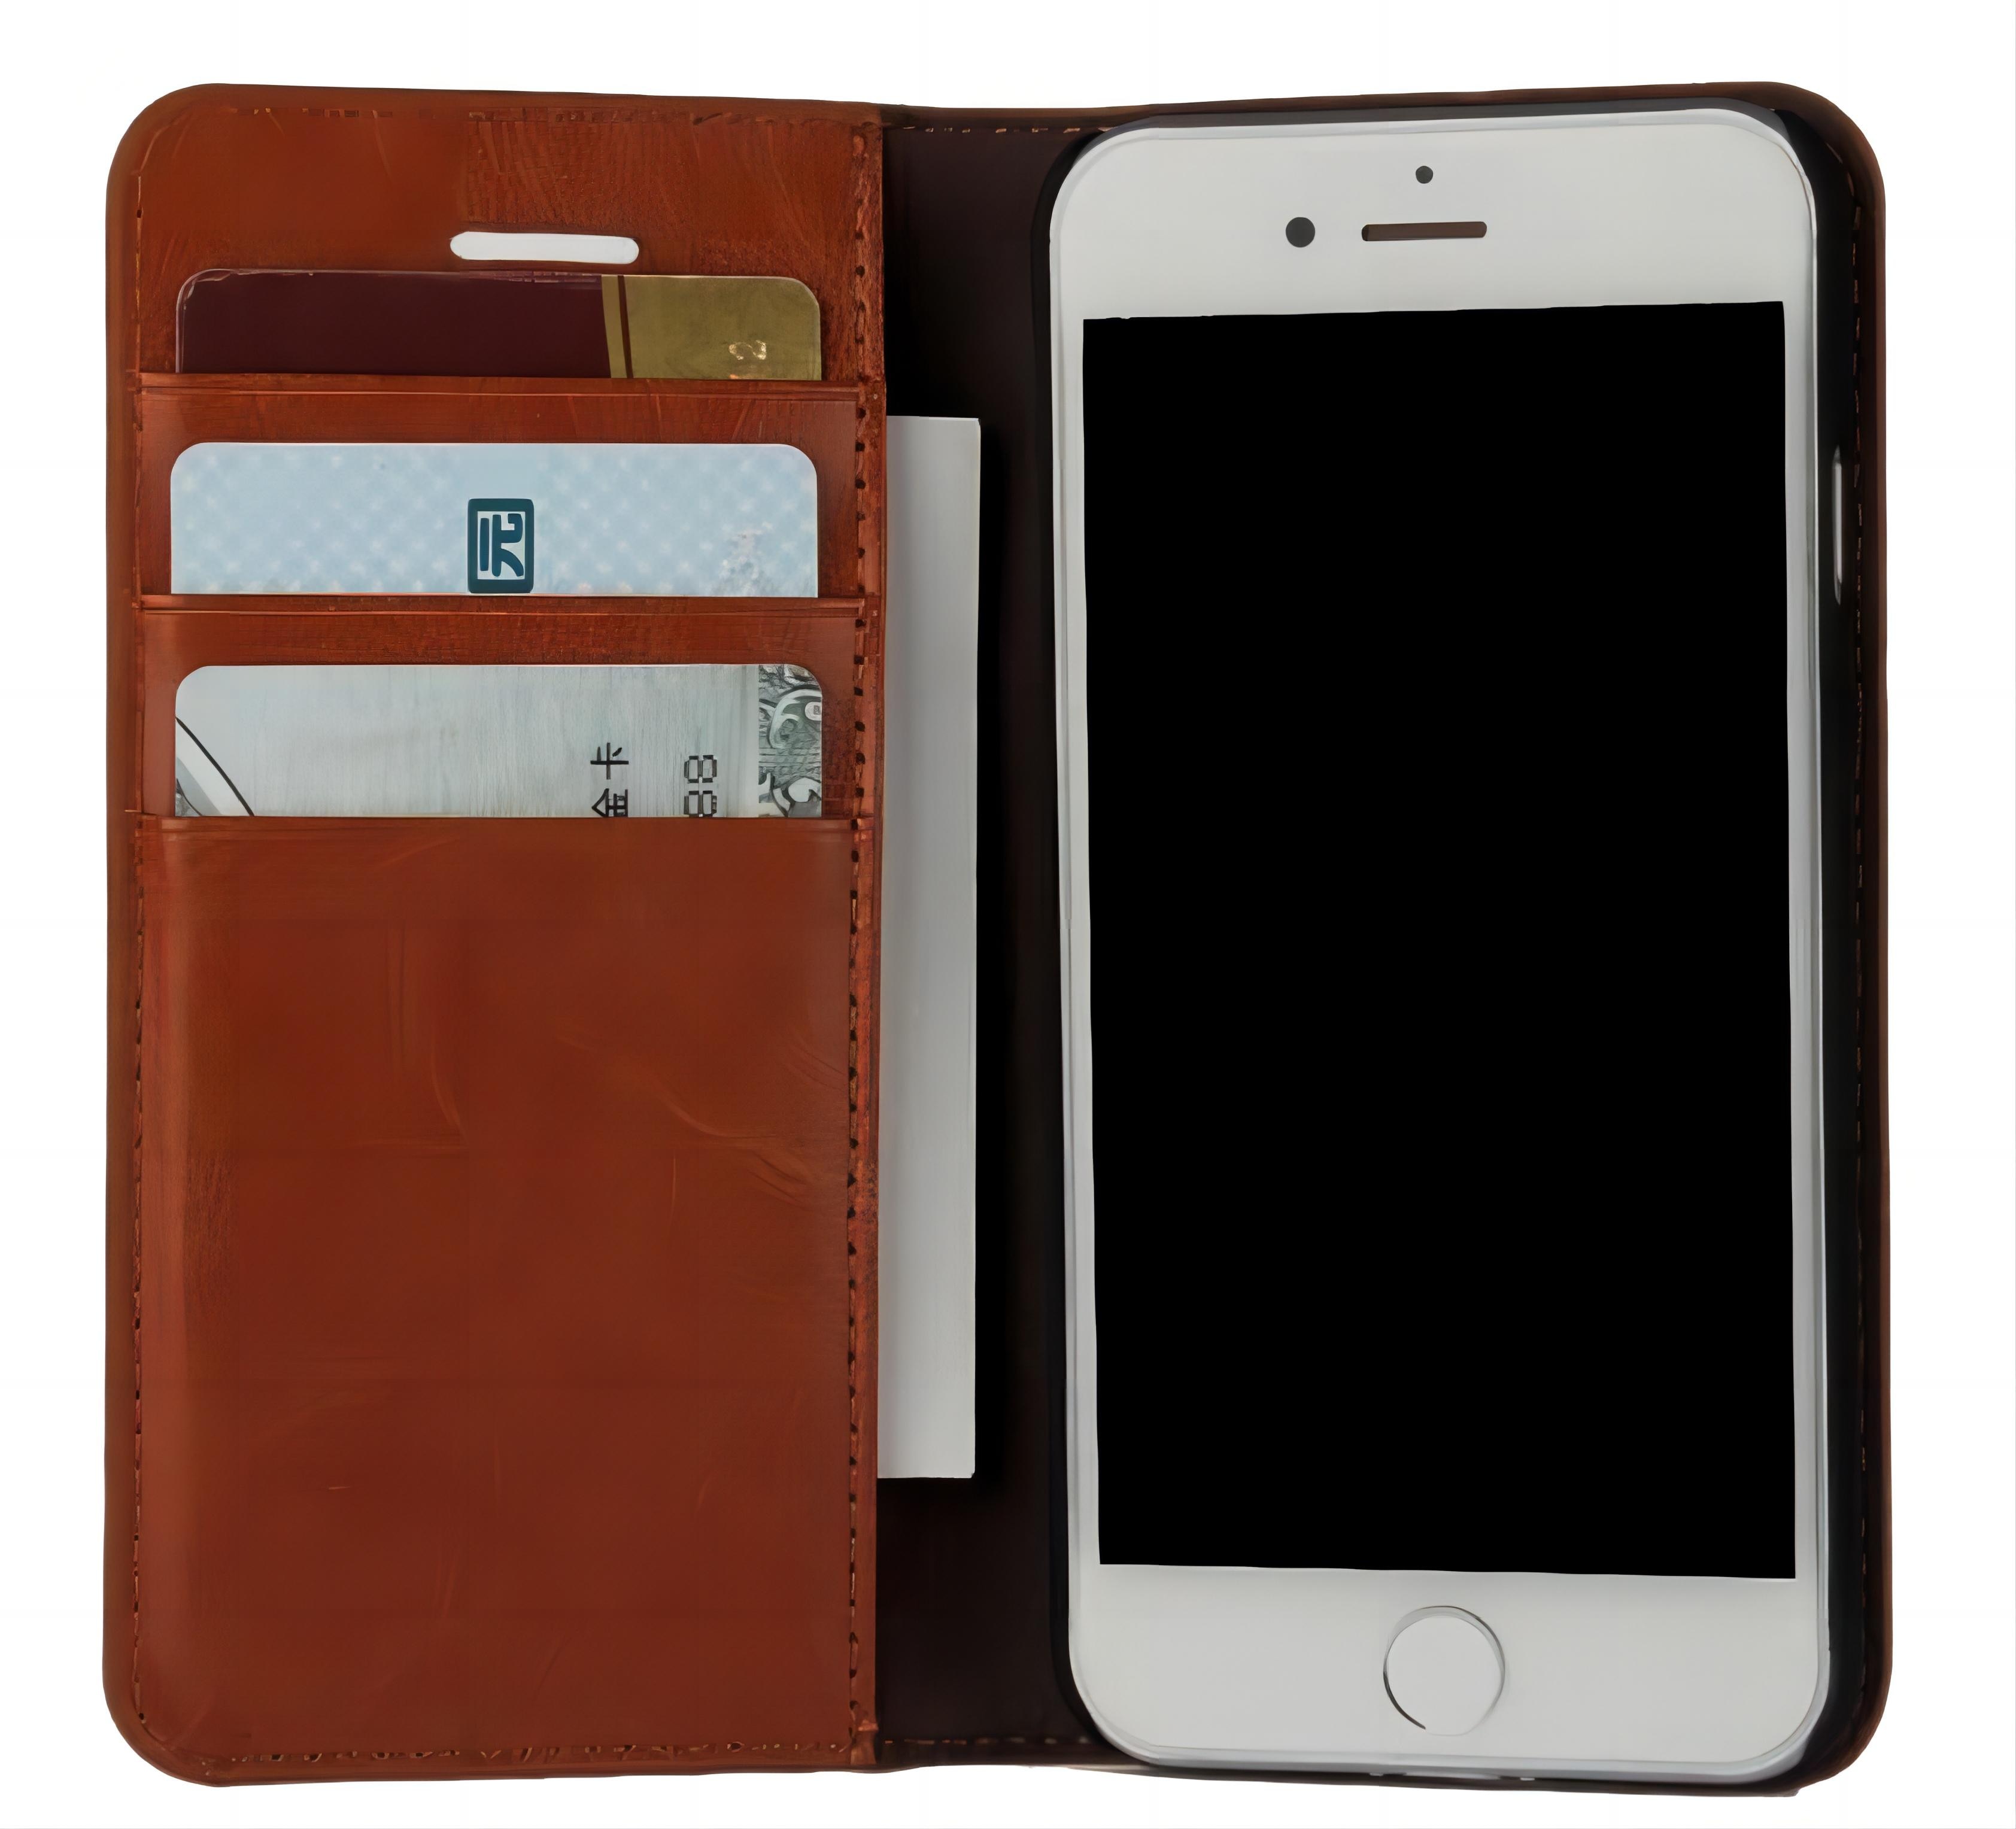 Funda cartera de cuero genuino iPhone SE (2022) marrón